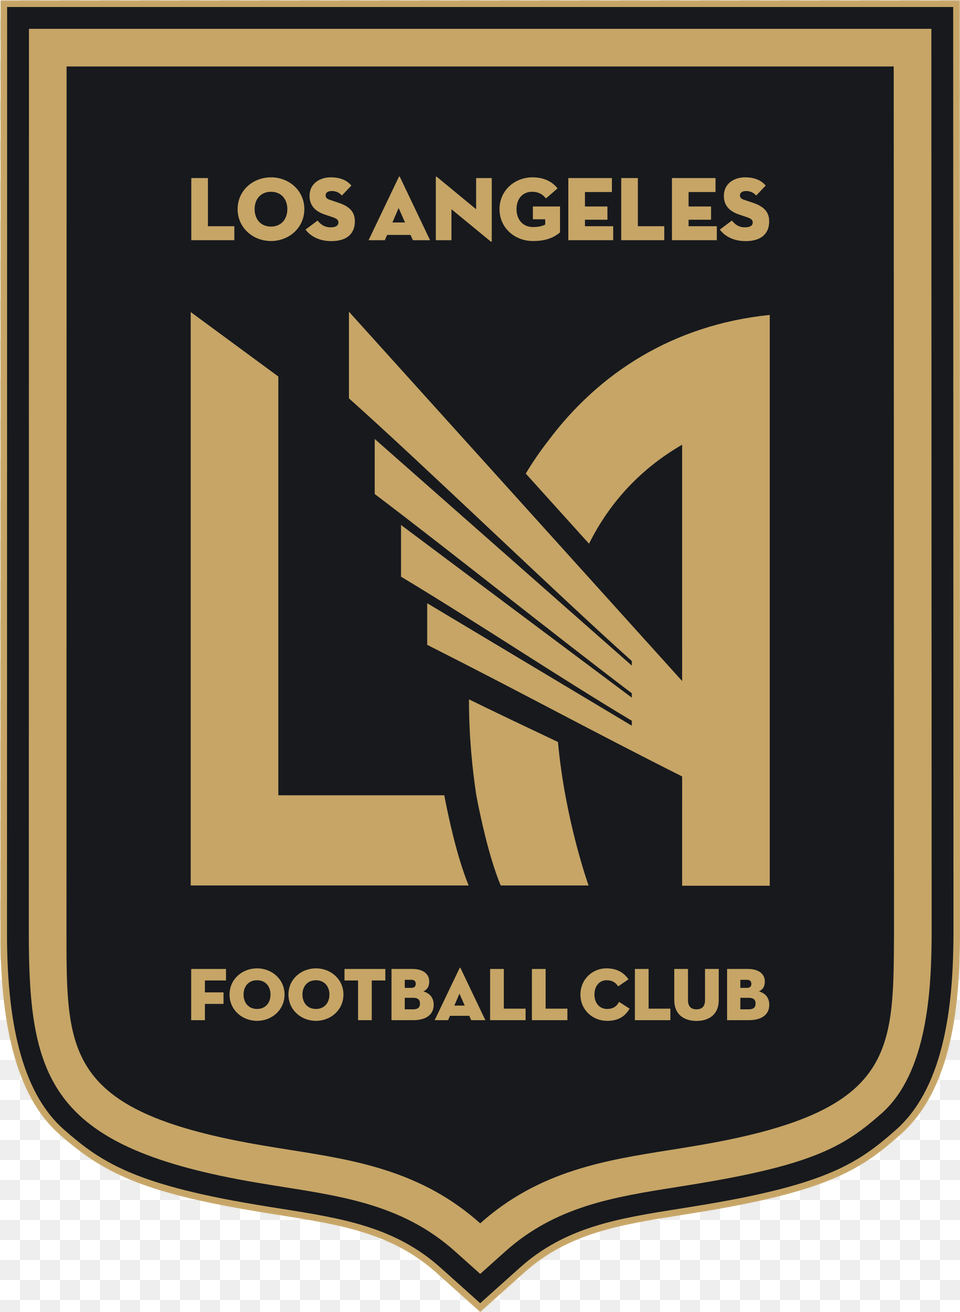 Los Angeles Fc Logo, Badge, Symbol, Emblem, Text Png